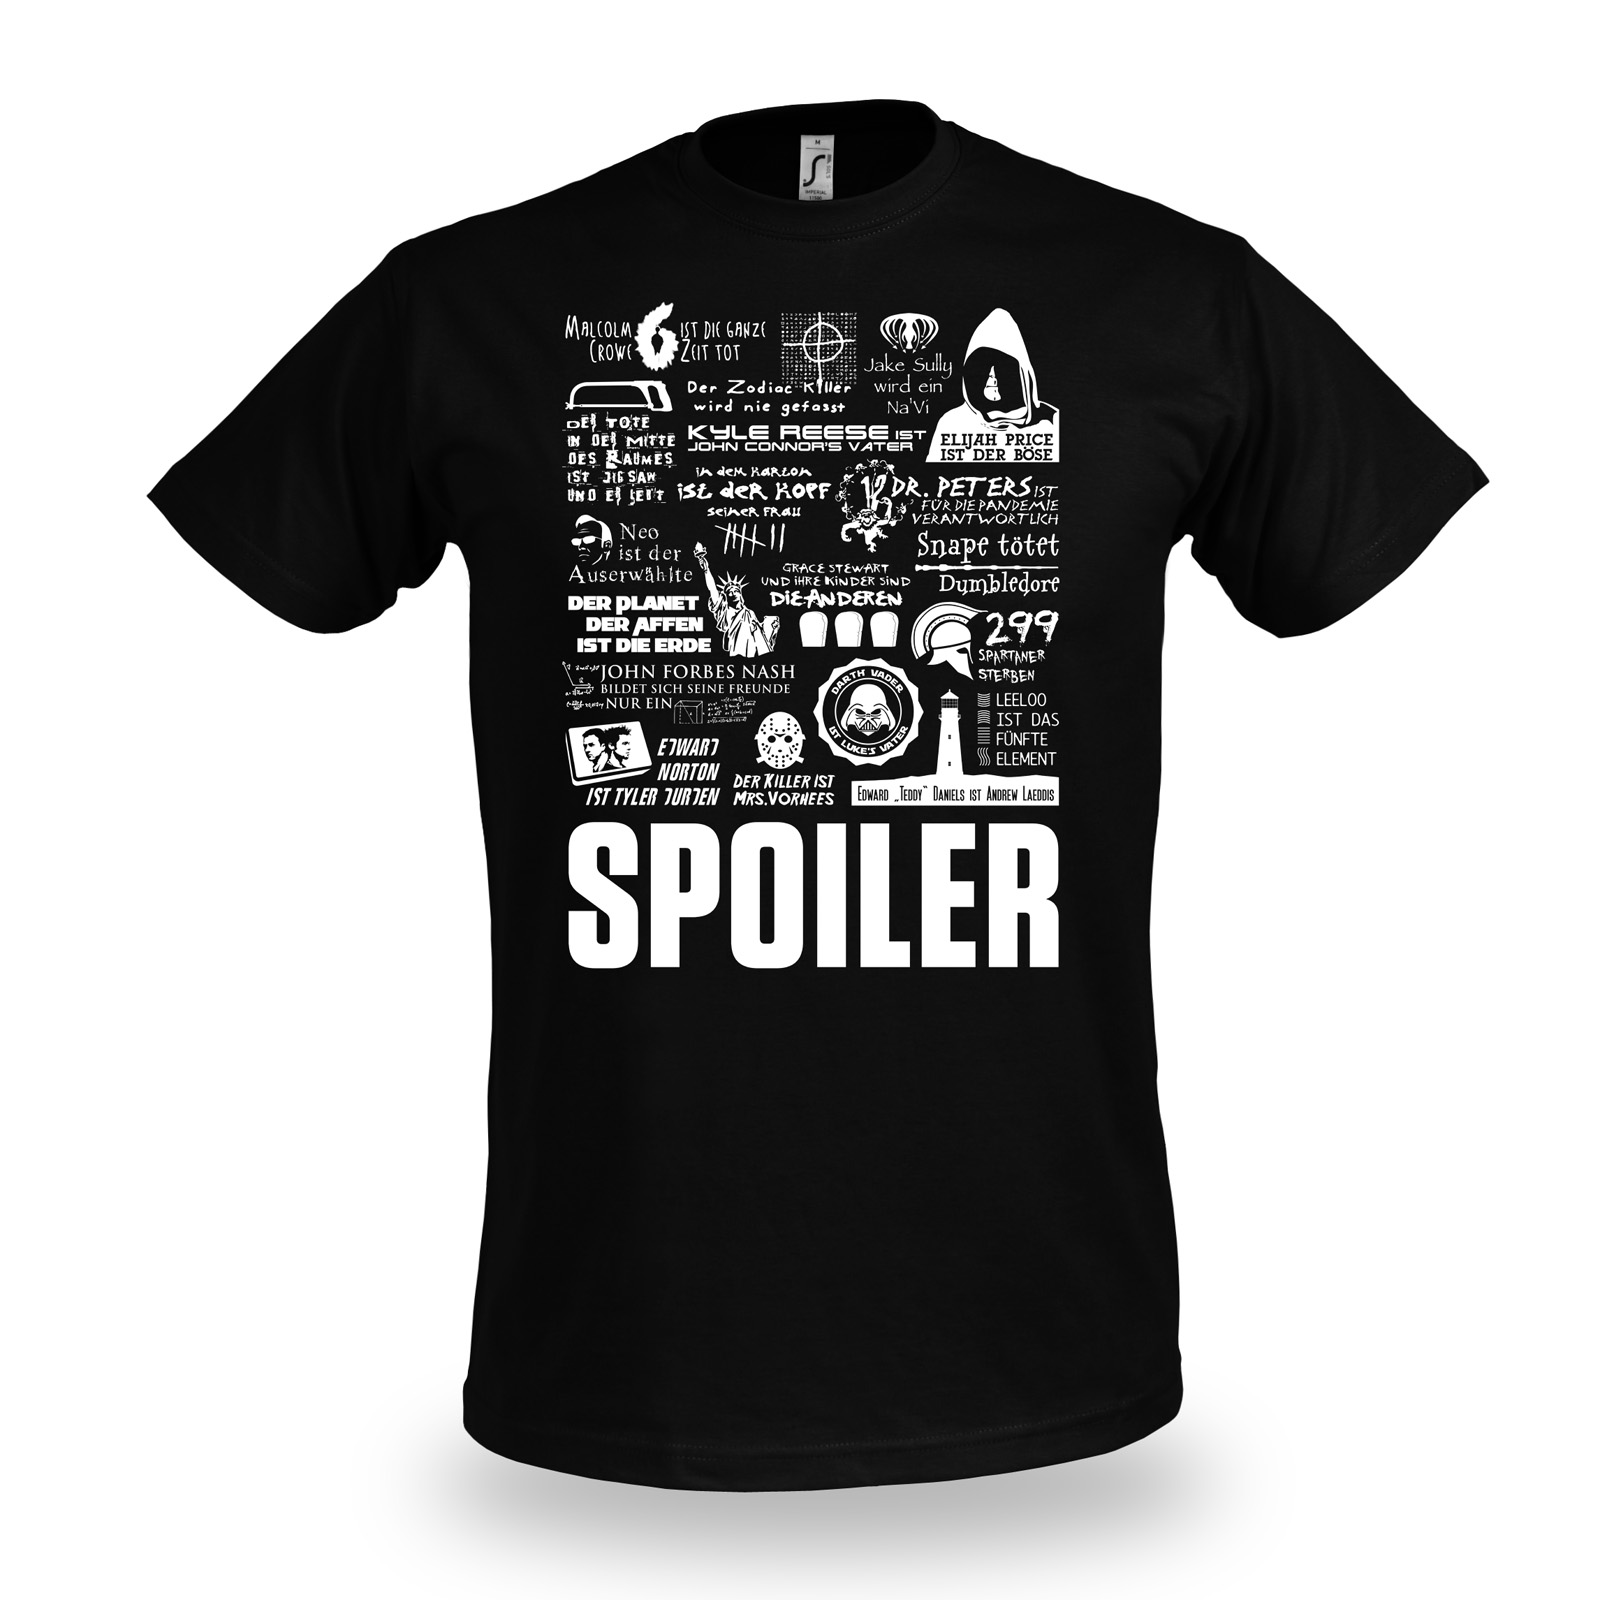 T-shirt Spoiler